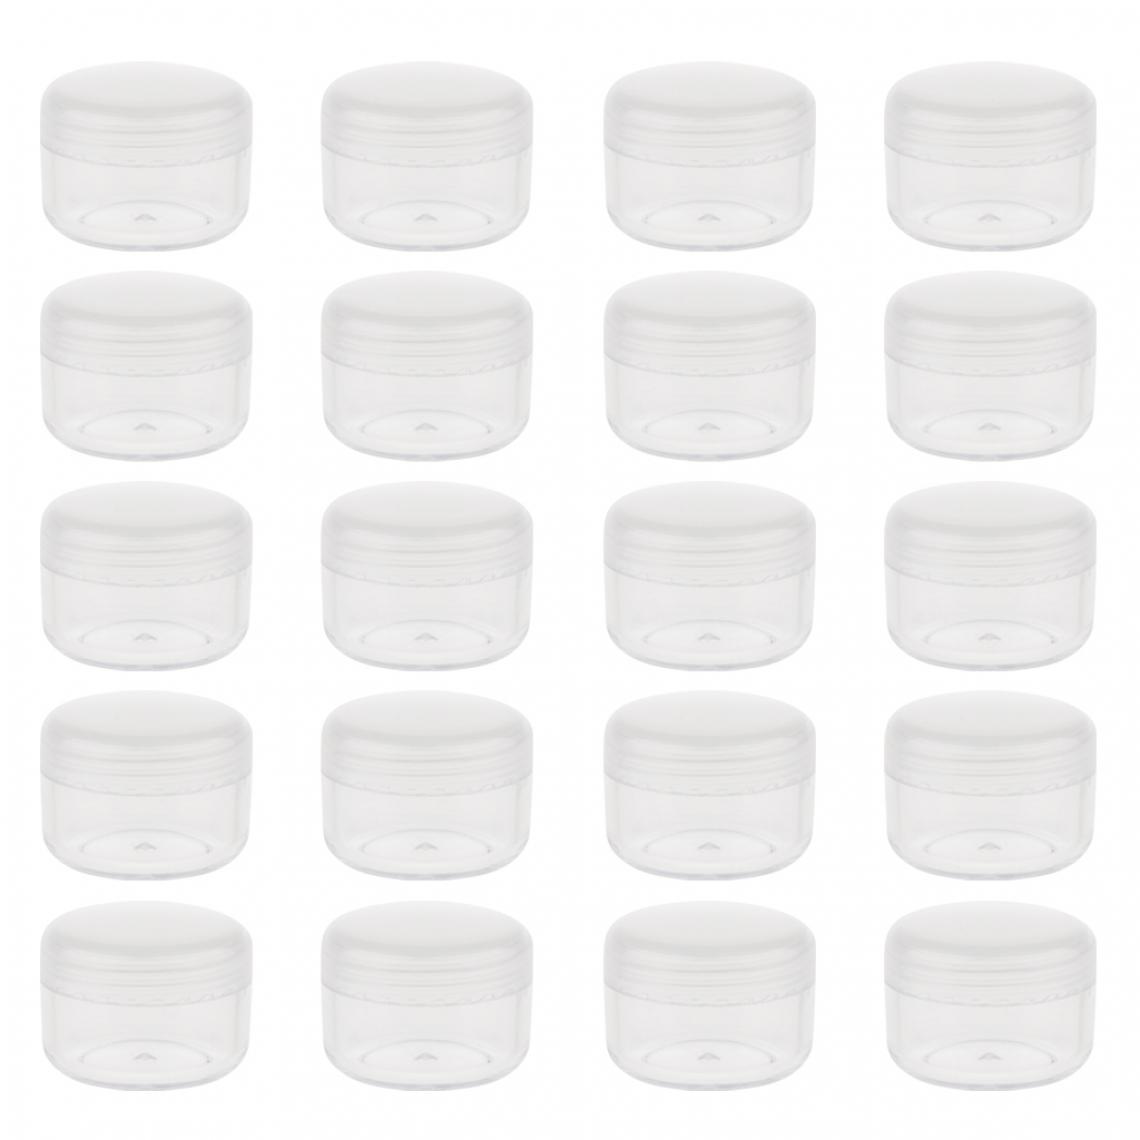 marque generique - petits pots de pots de crème cosmétique en plastique vide conteneurs de cosmétiques avec des couvercles 5g - Maquillage et coiffure